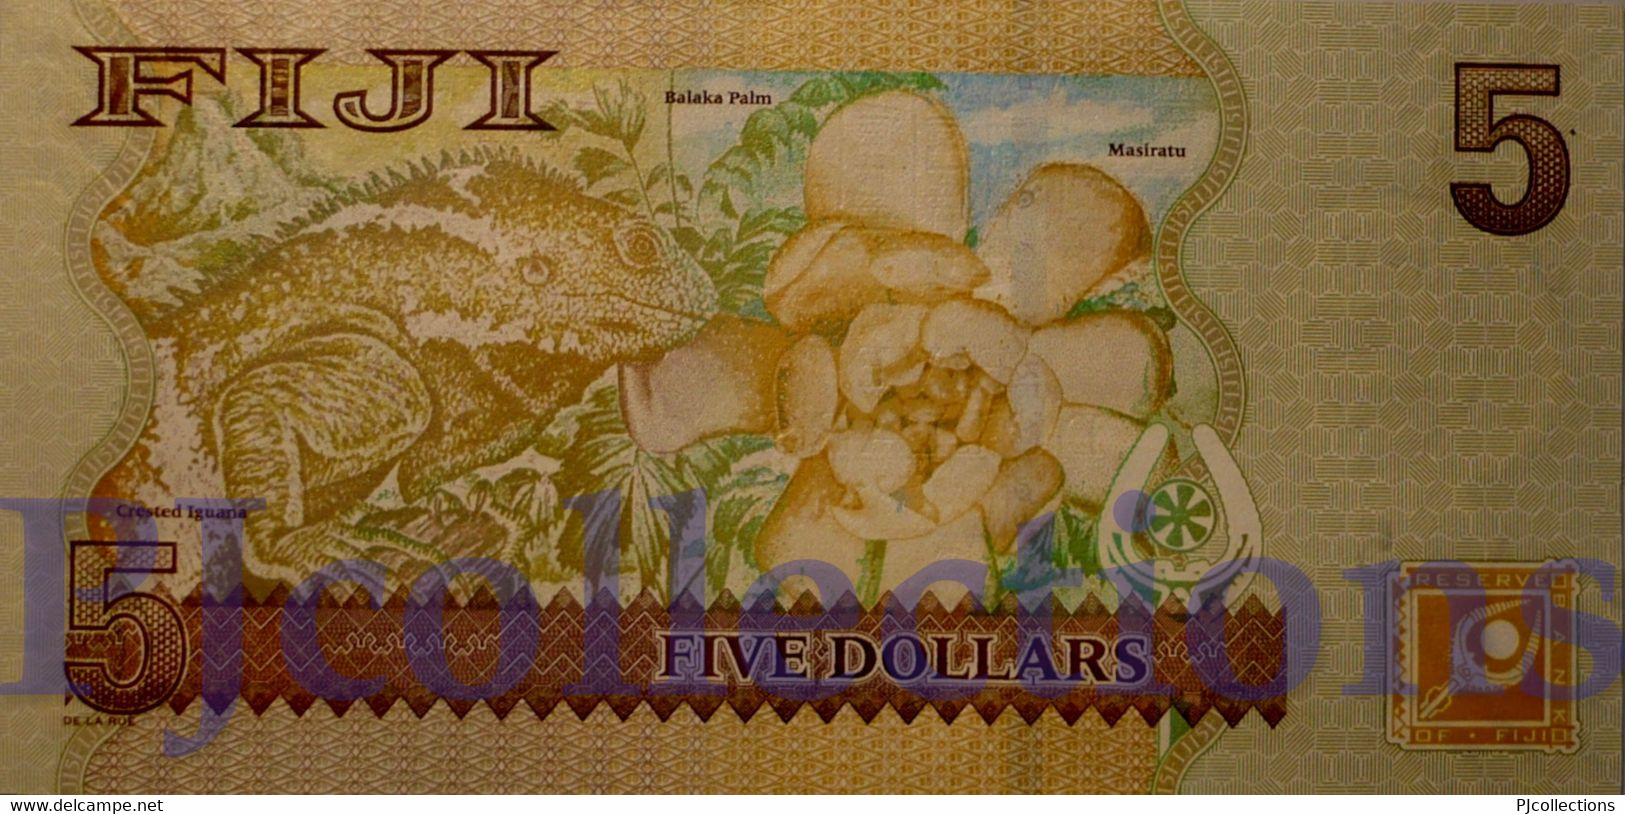 FIJI 5 DOLLARS 2007 PICK 110b UNC - Fidschi